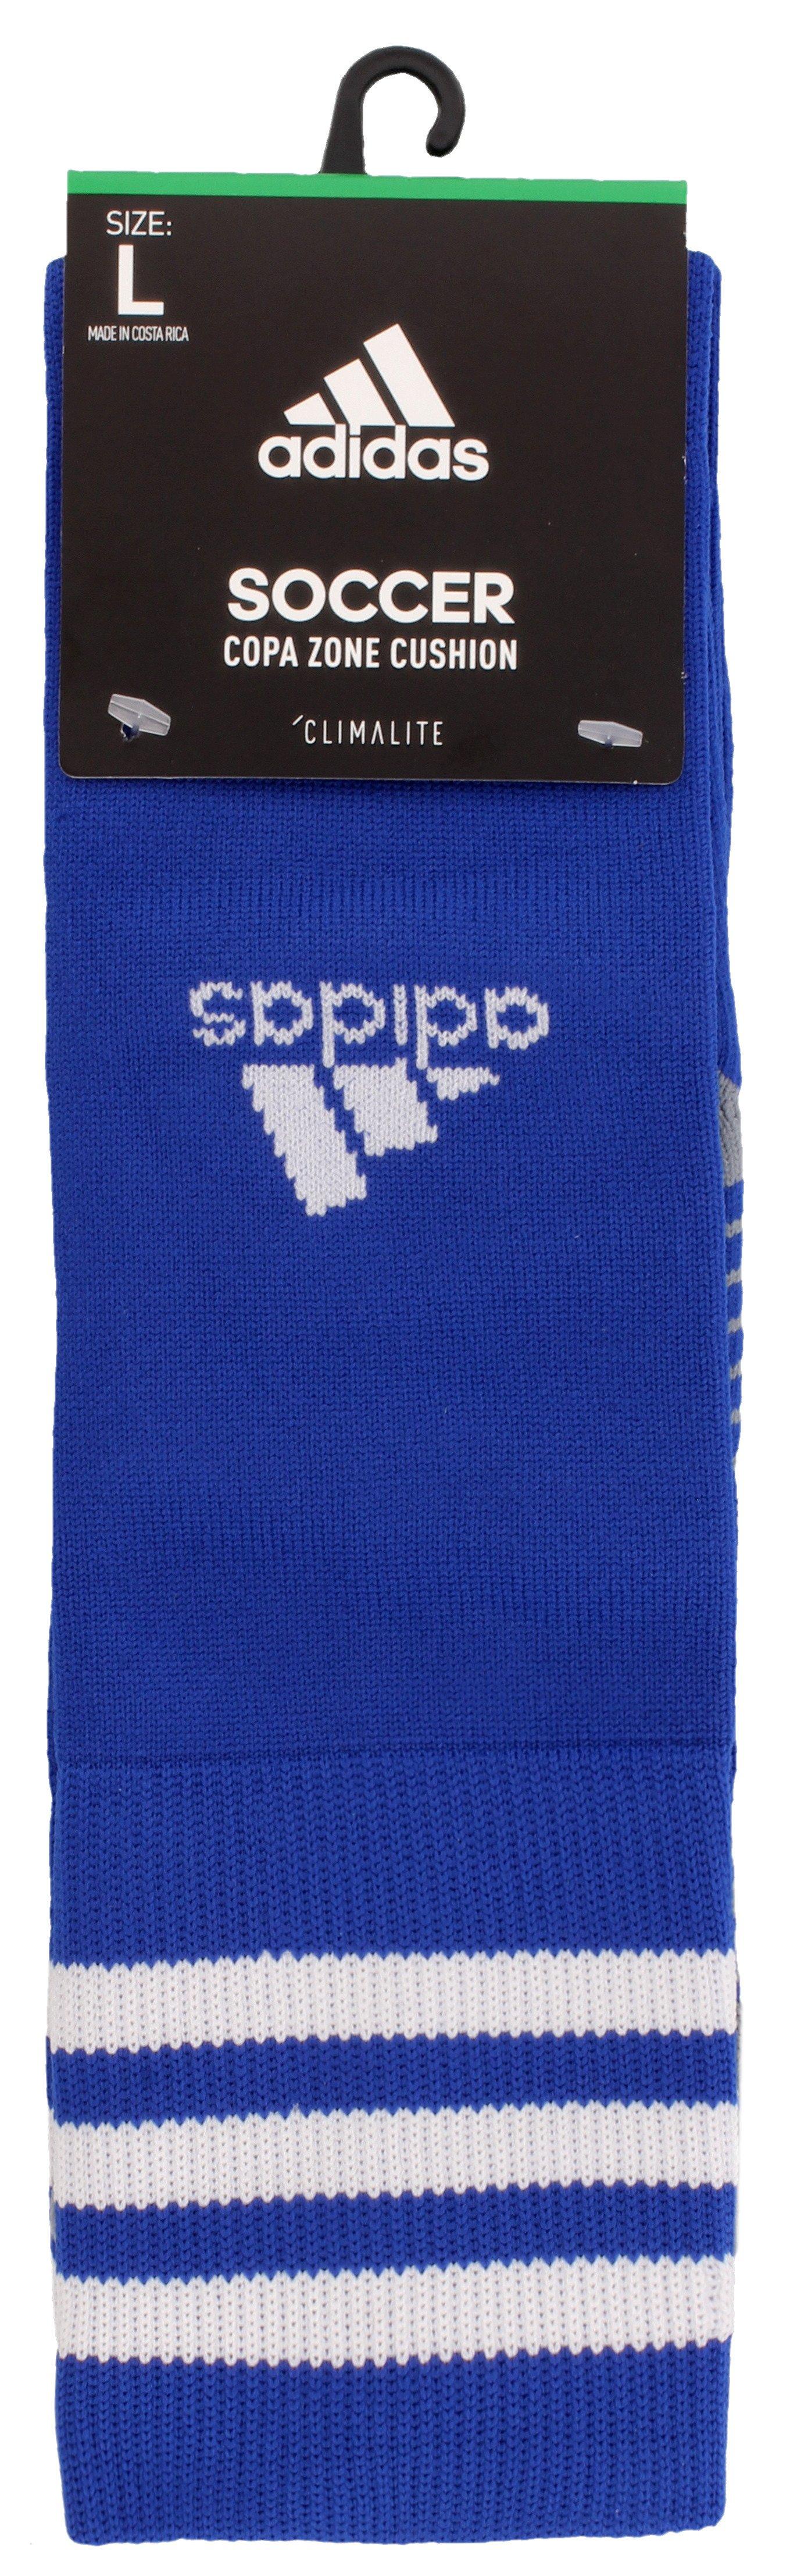 adidas towel socks